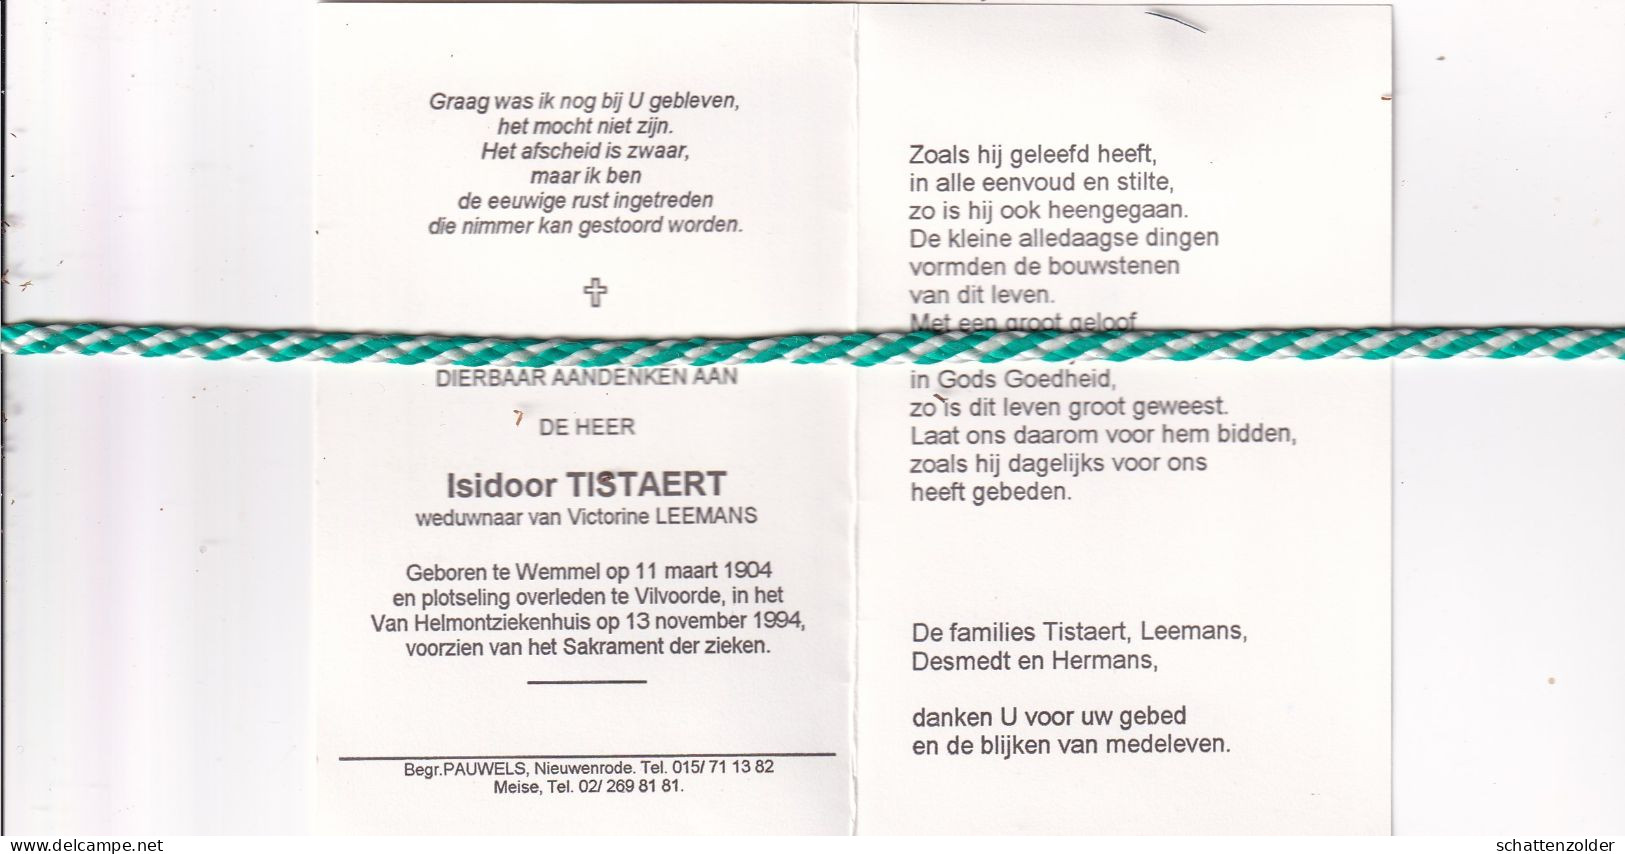 Isidoor Tistaert-Leemans, Wemmel 1904, Vilvoorde 1994 - Obituary Notices